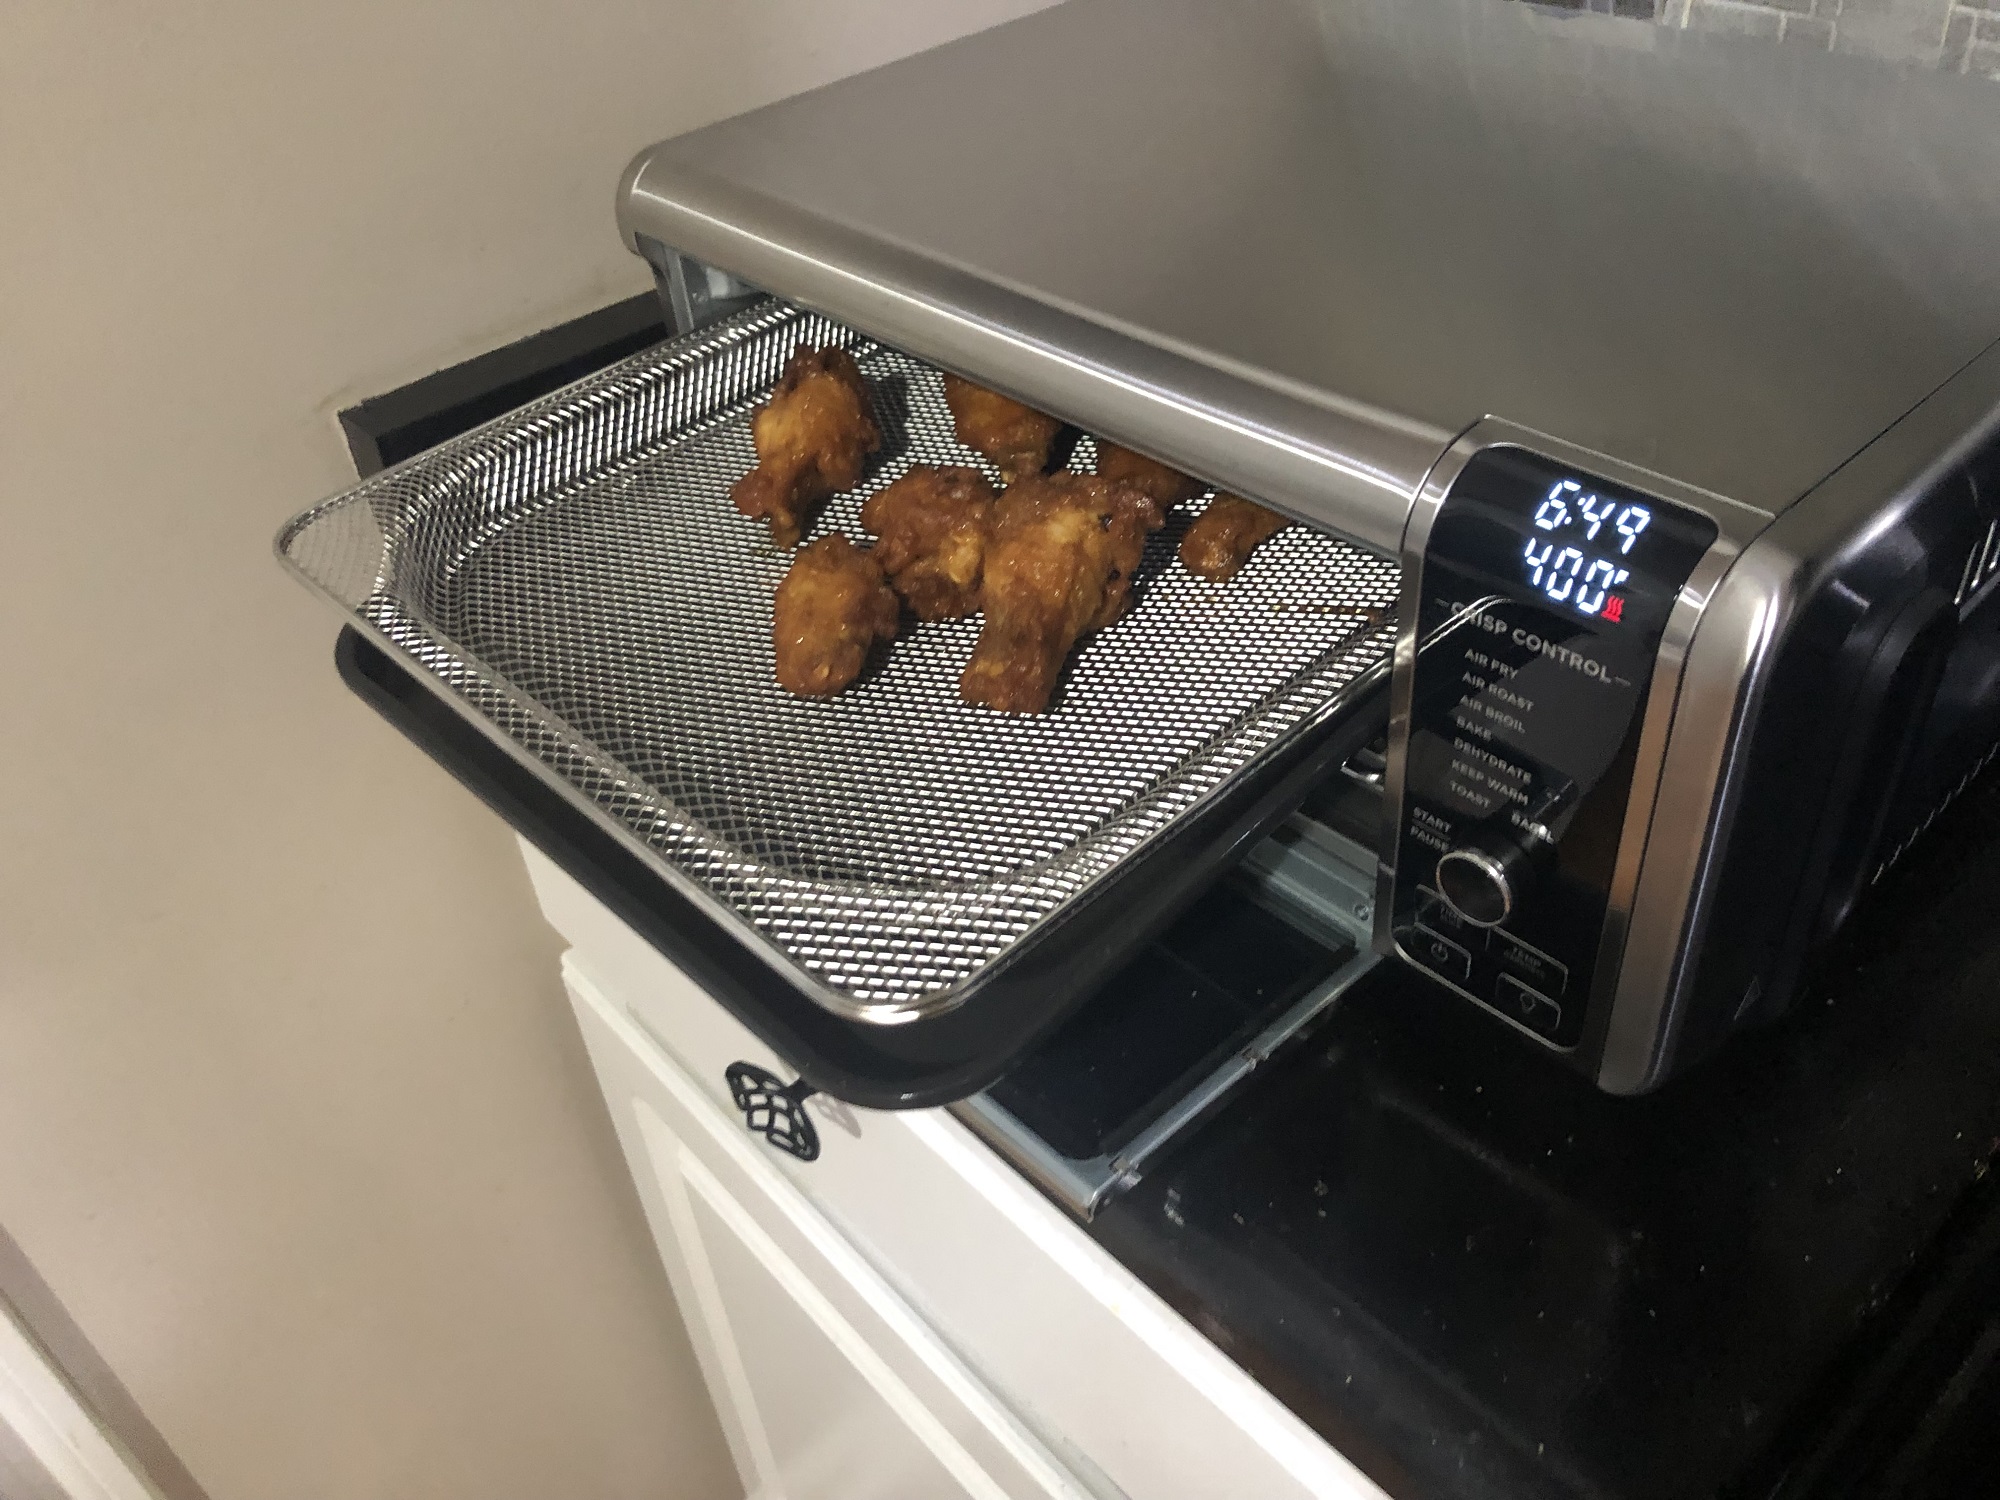 Ninja Foodi Digital Air Fryer Oven - Stainless Steel, 1 ct - Fry's Food  Stores